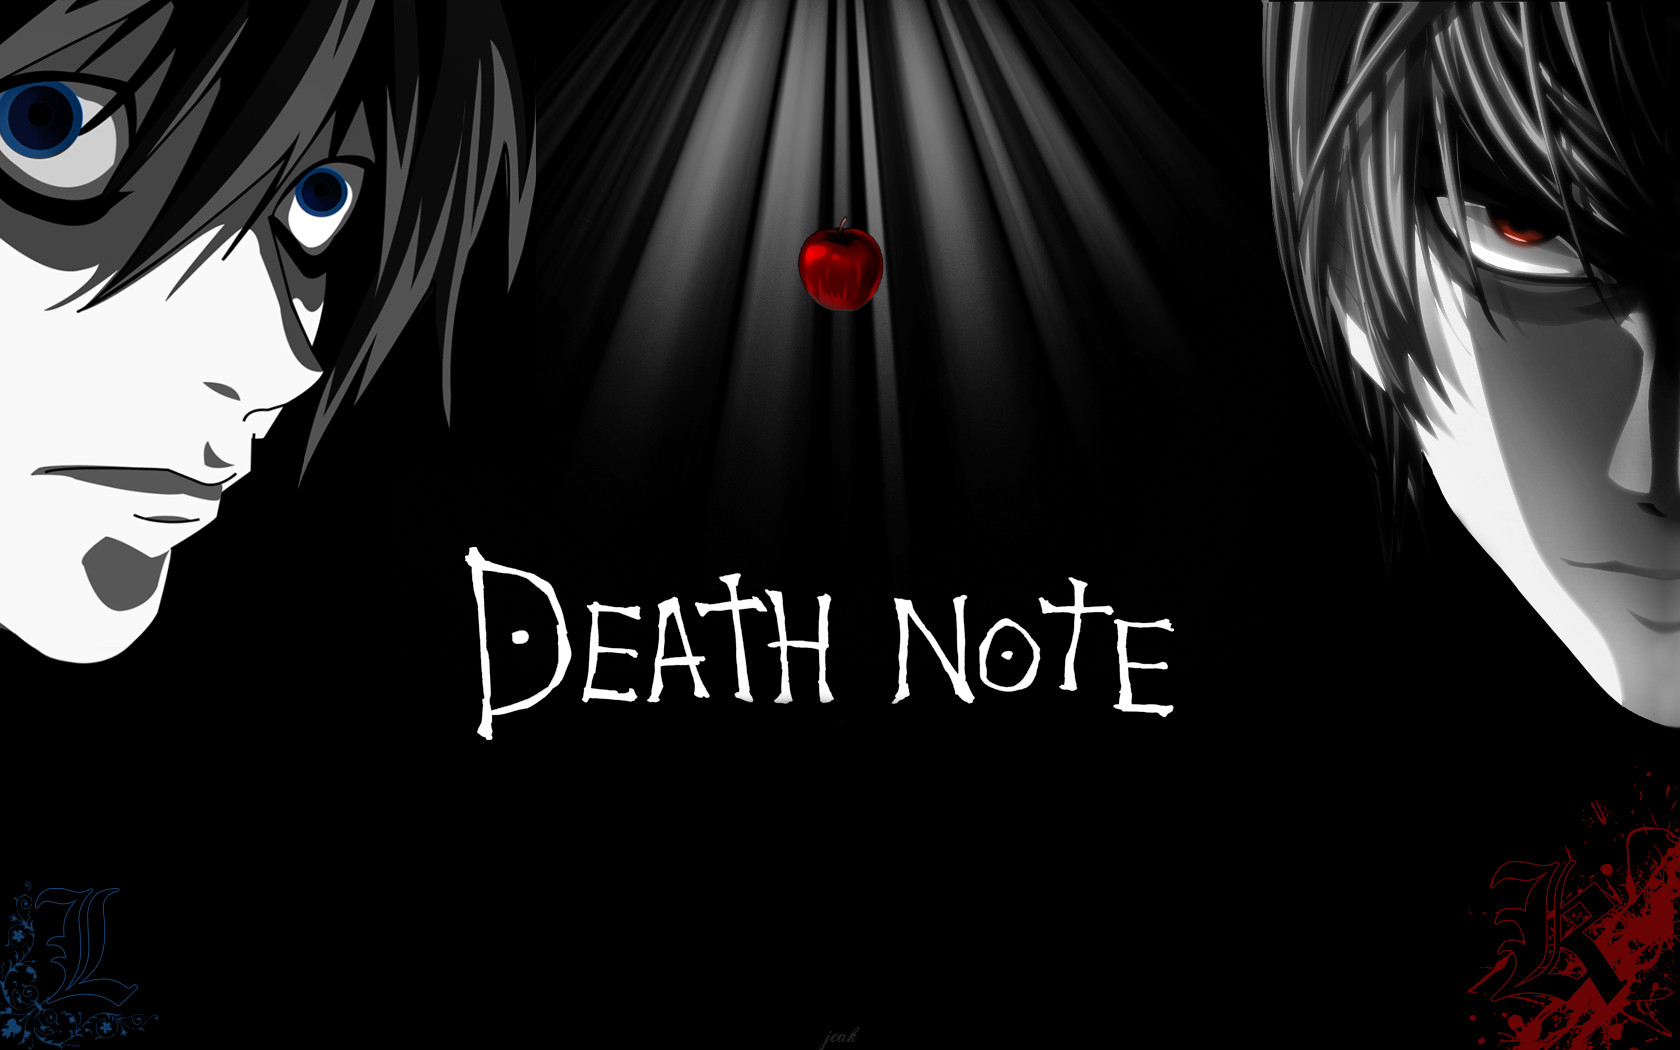 Résultat de recherche d'images pour "death note"